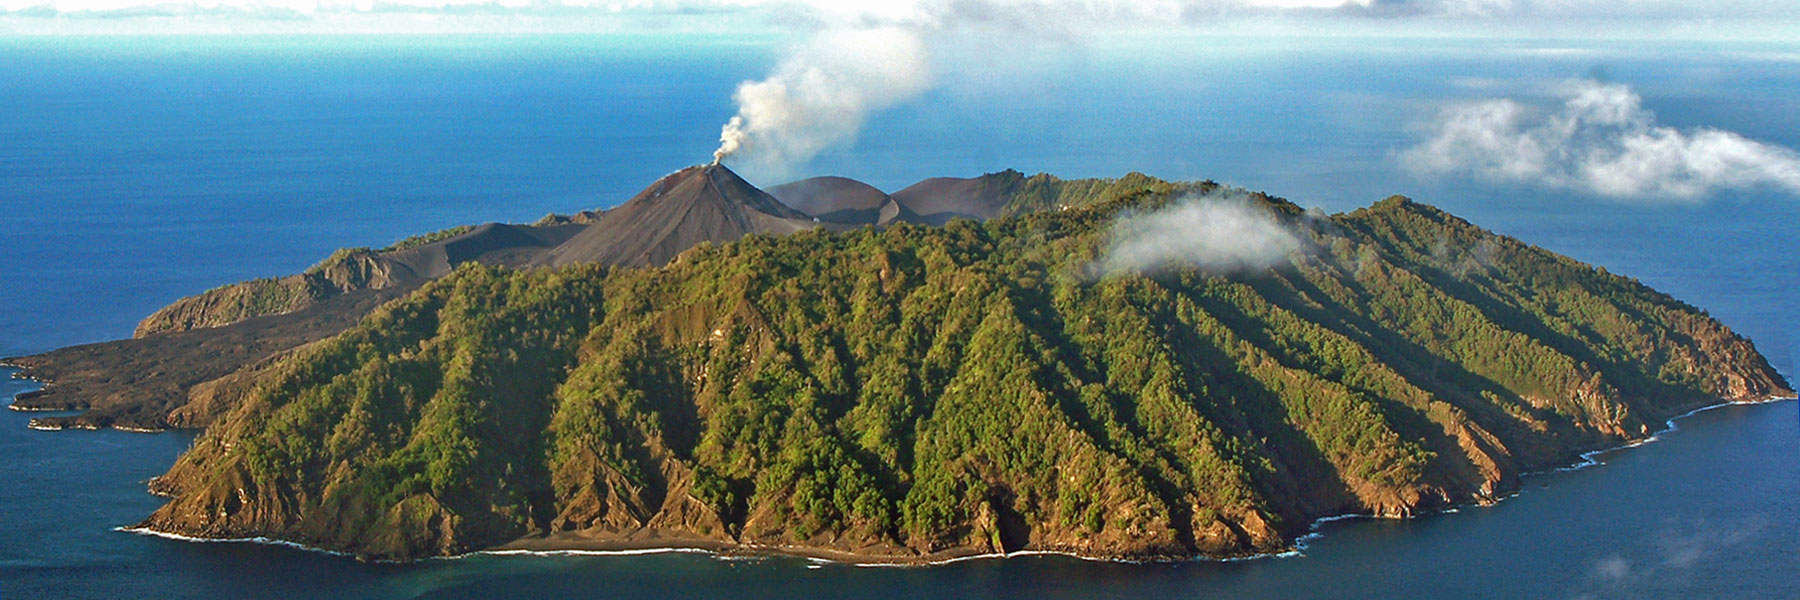 Barren Island Volcano